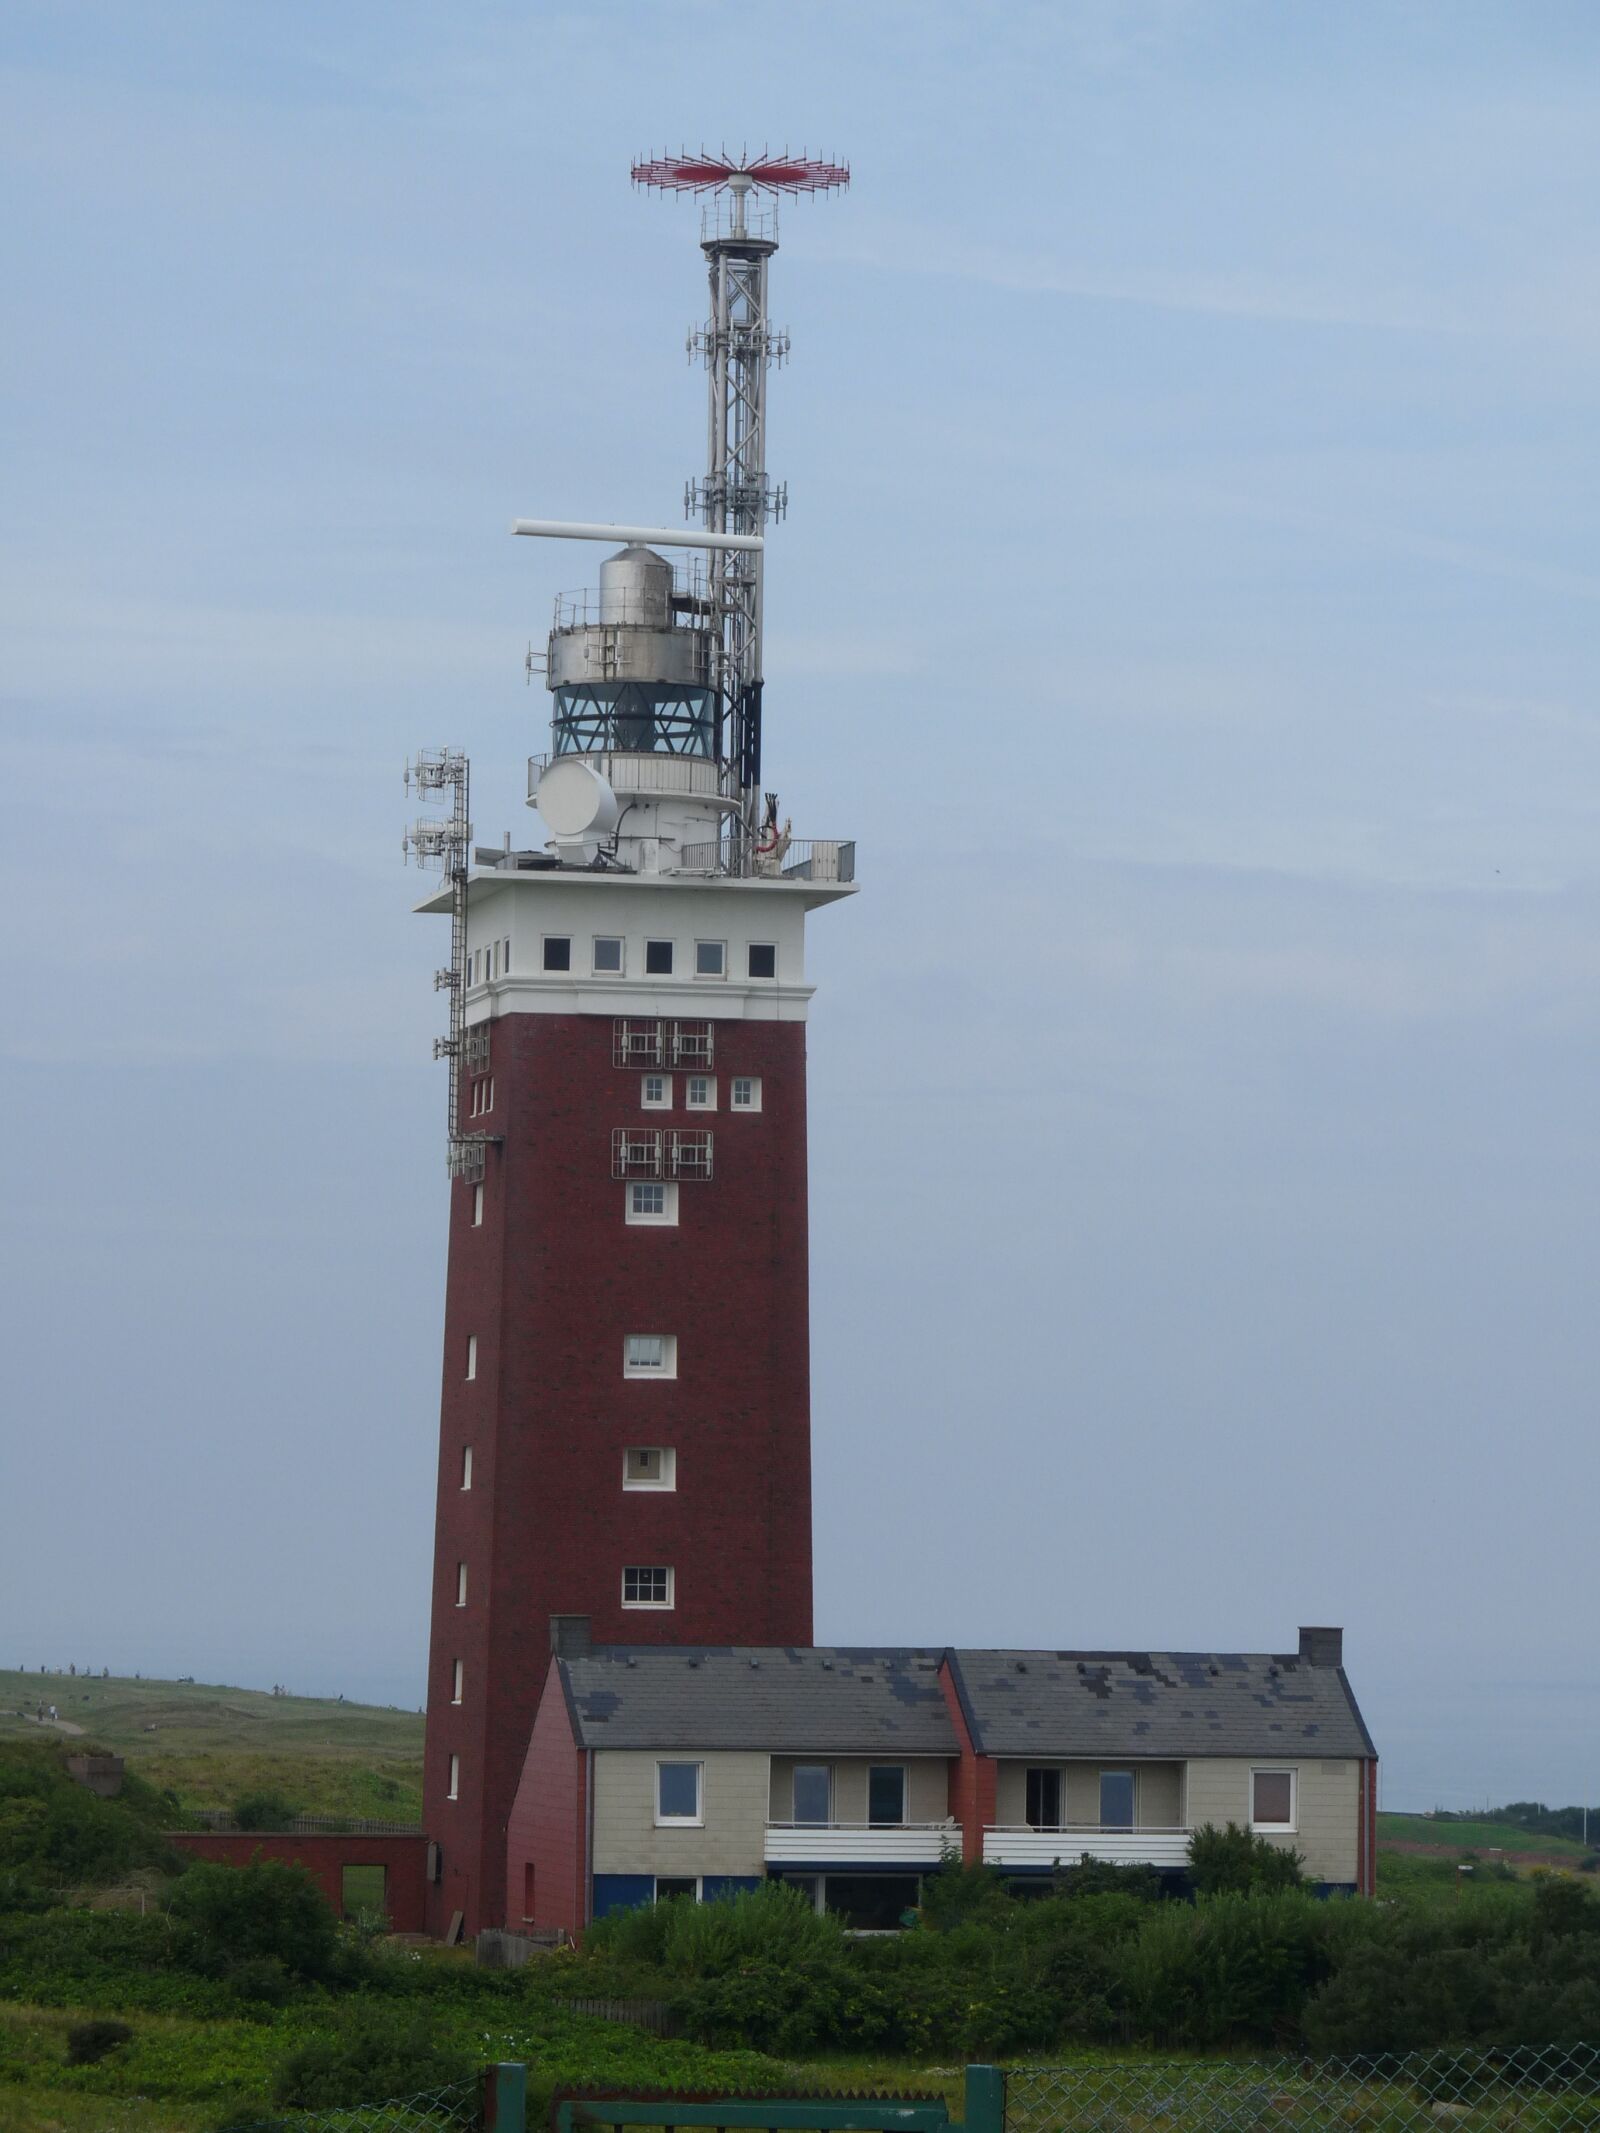 Panasonic Lumix DMC-FZ28 sample photo. Lighthouse, helgoland, before photography